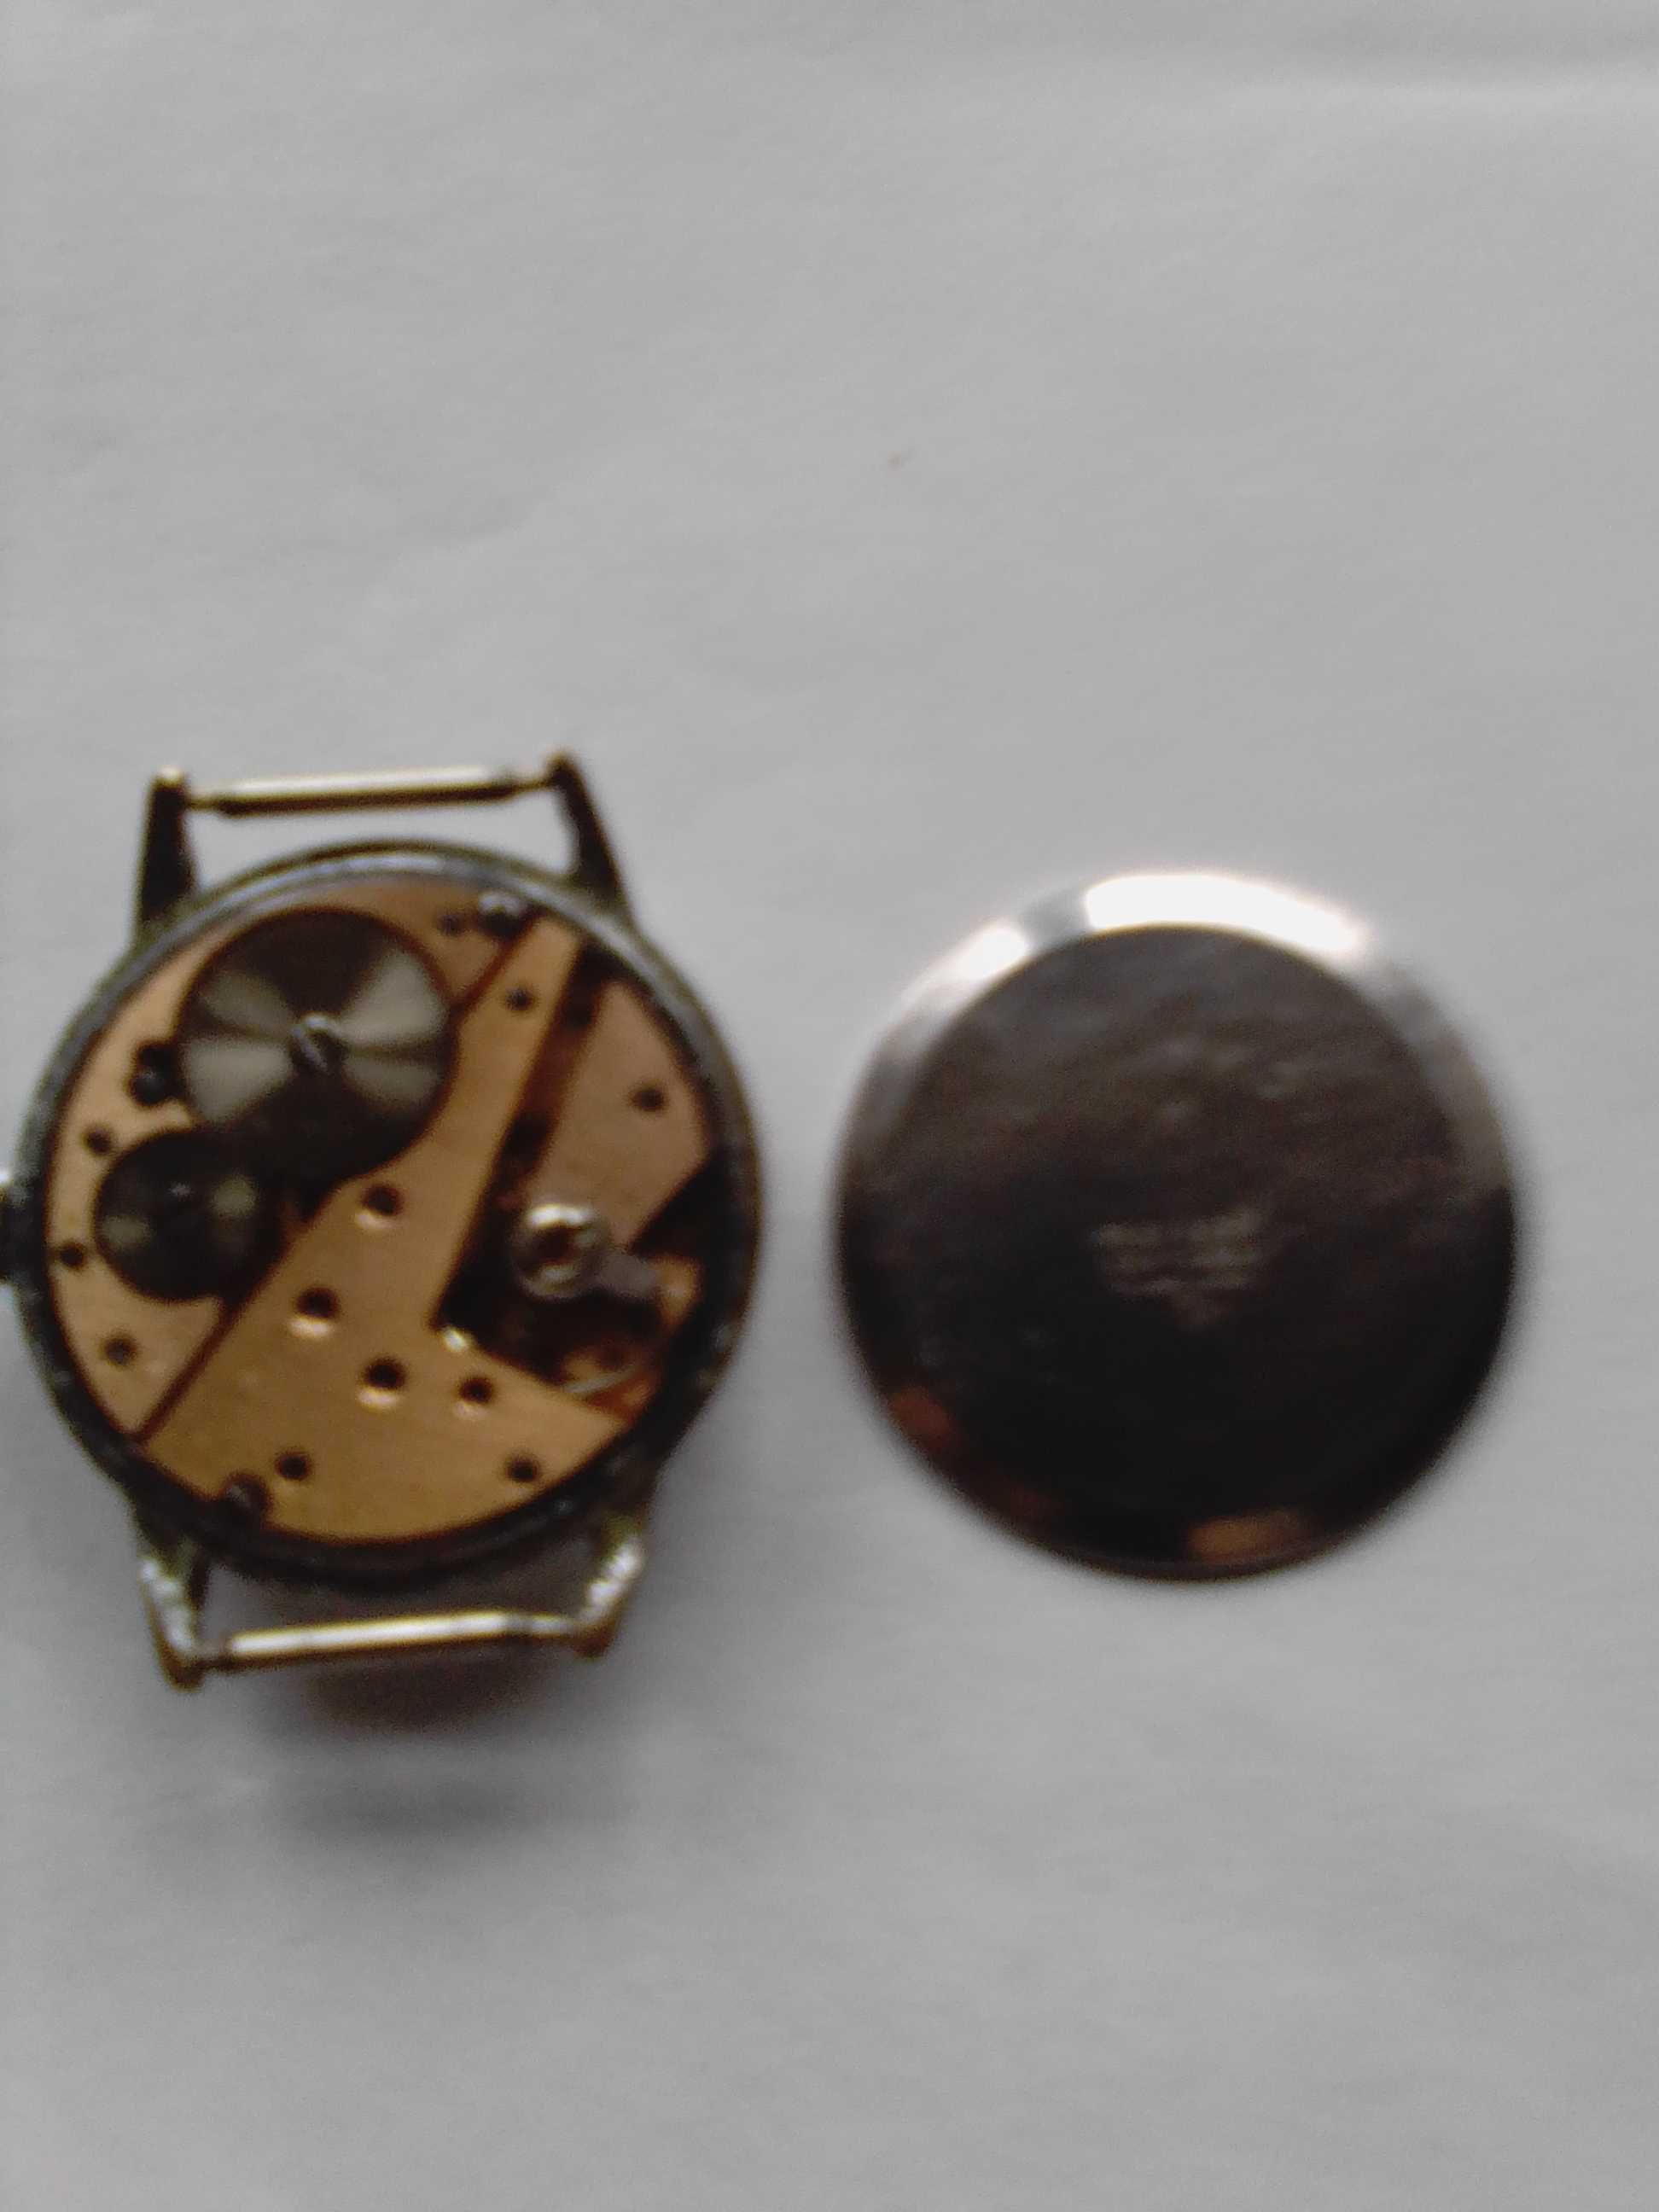 Ceas vechi de colectie functional VINTAN 17 jewels .swiss ani 1940/50